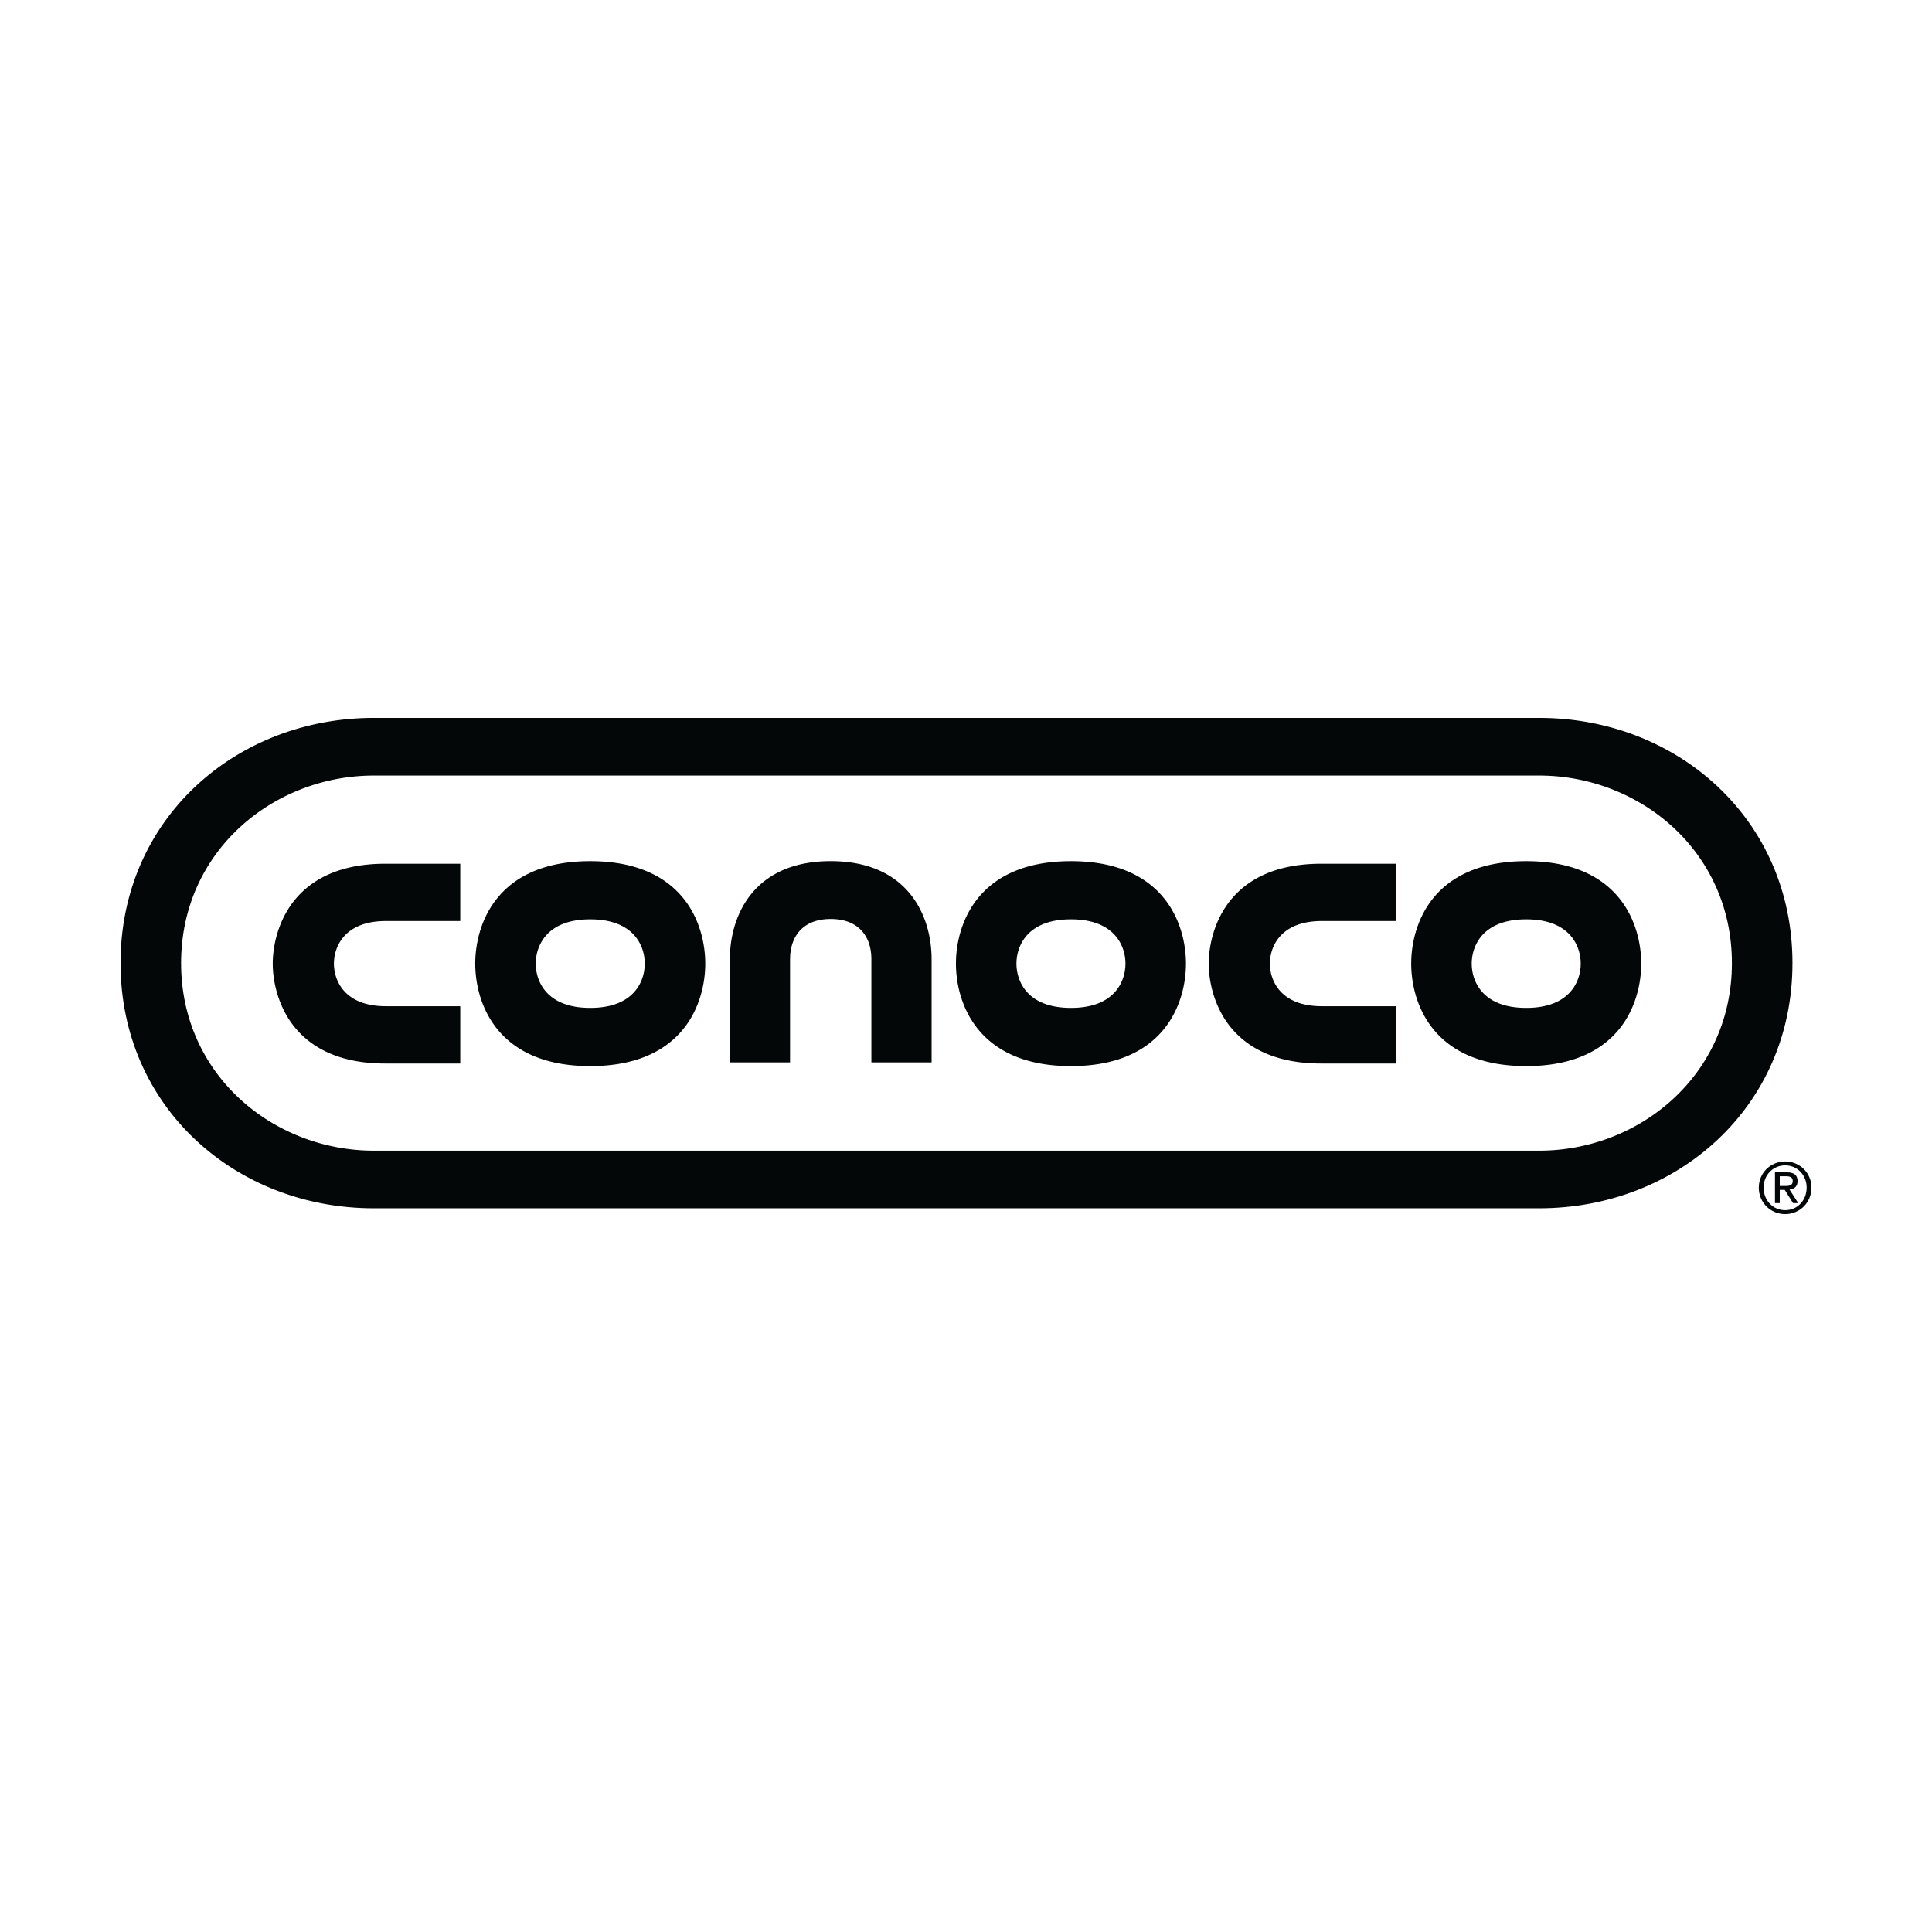 conoco-logo-black.png